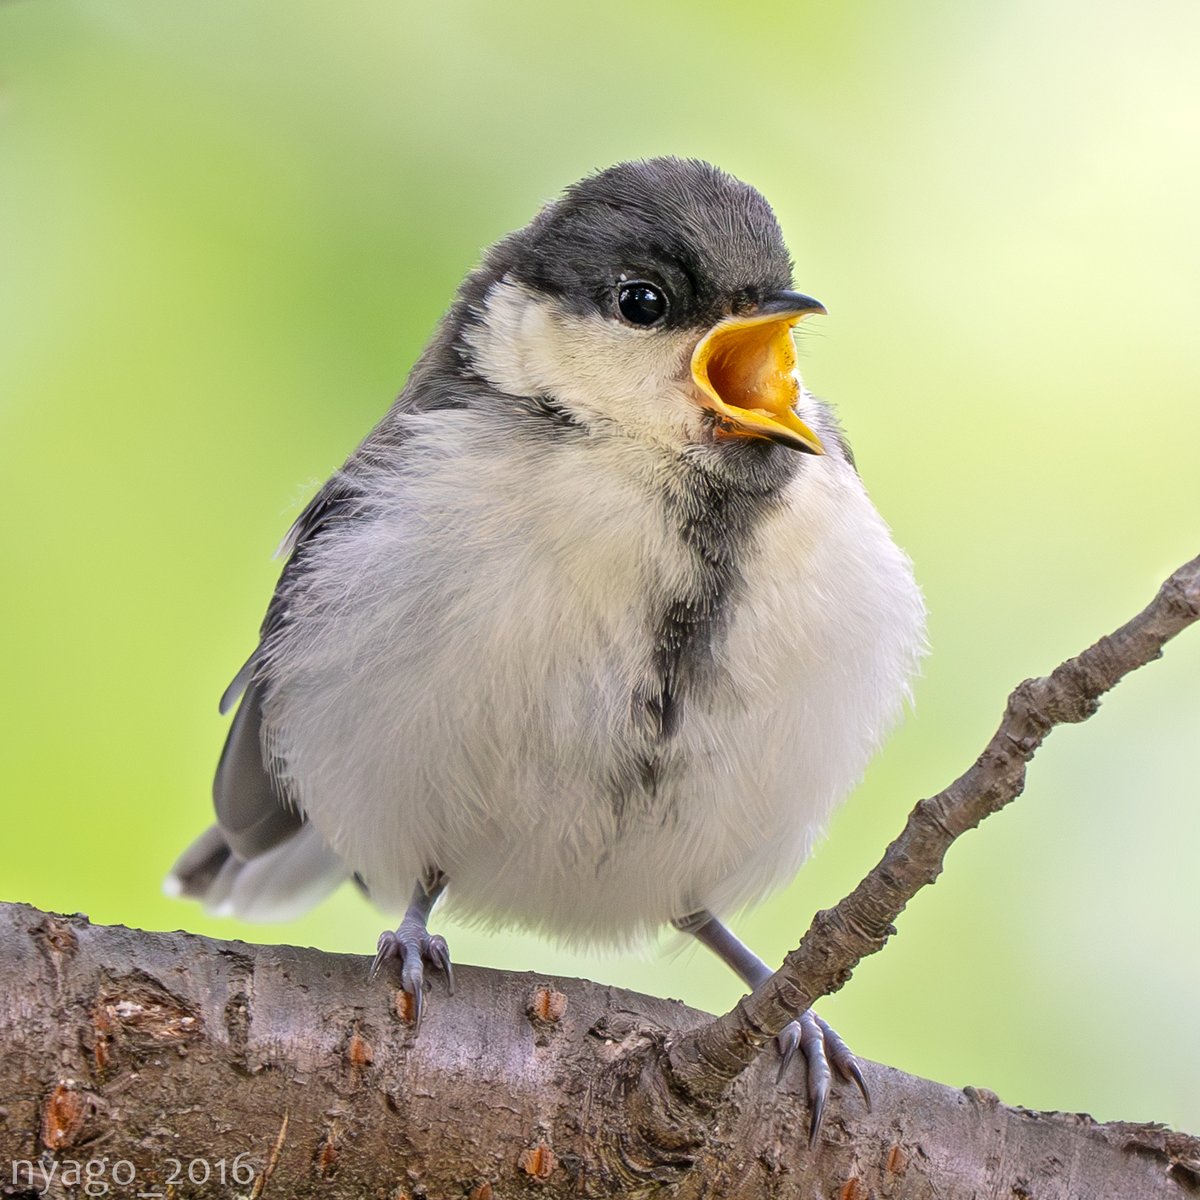 ごはんまだですかぁ～？
#シジュウカラ #幼鳥 #JapaneseTit #GreatTit #四十雀 #fledgling #鳥 #野鳥 #bird #wildbird